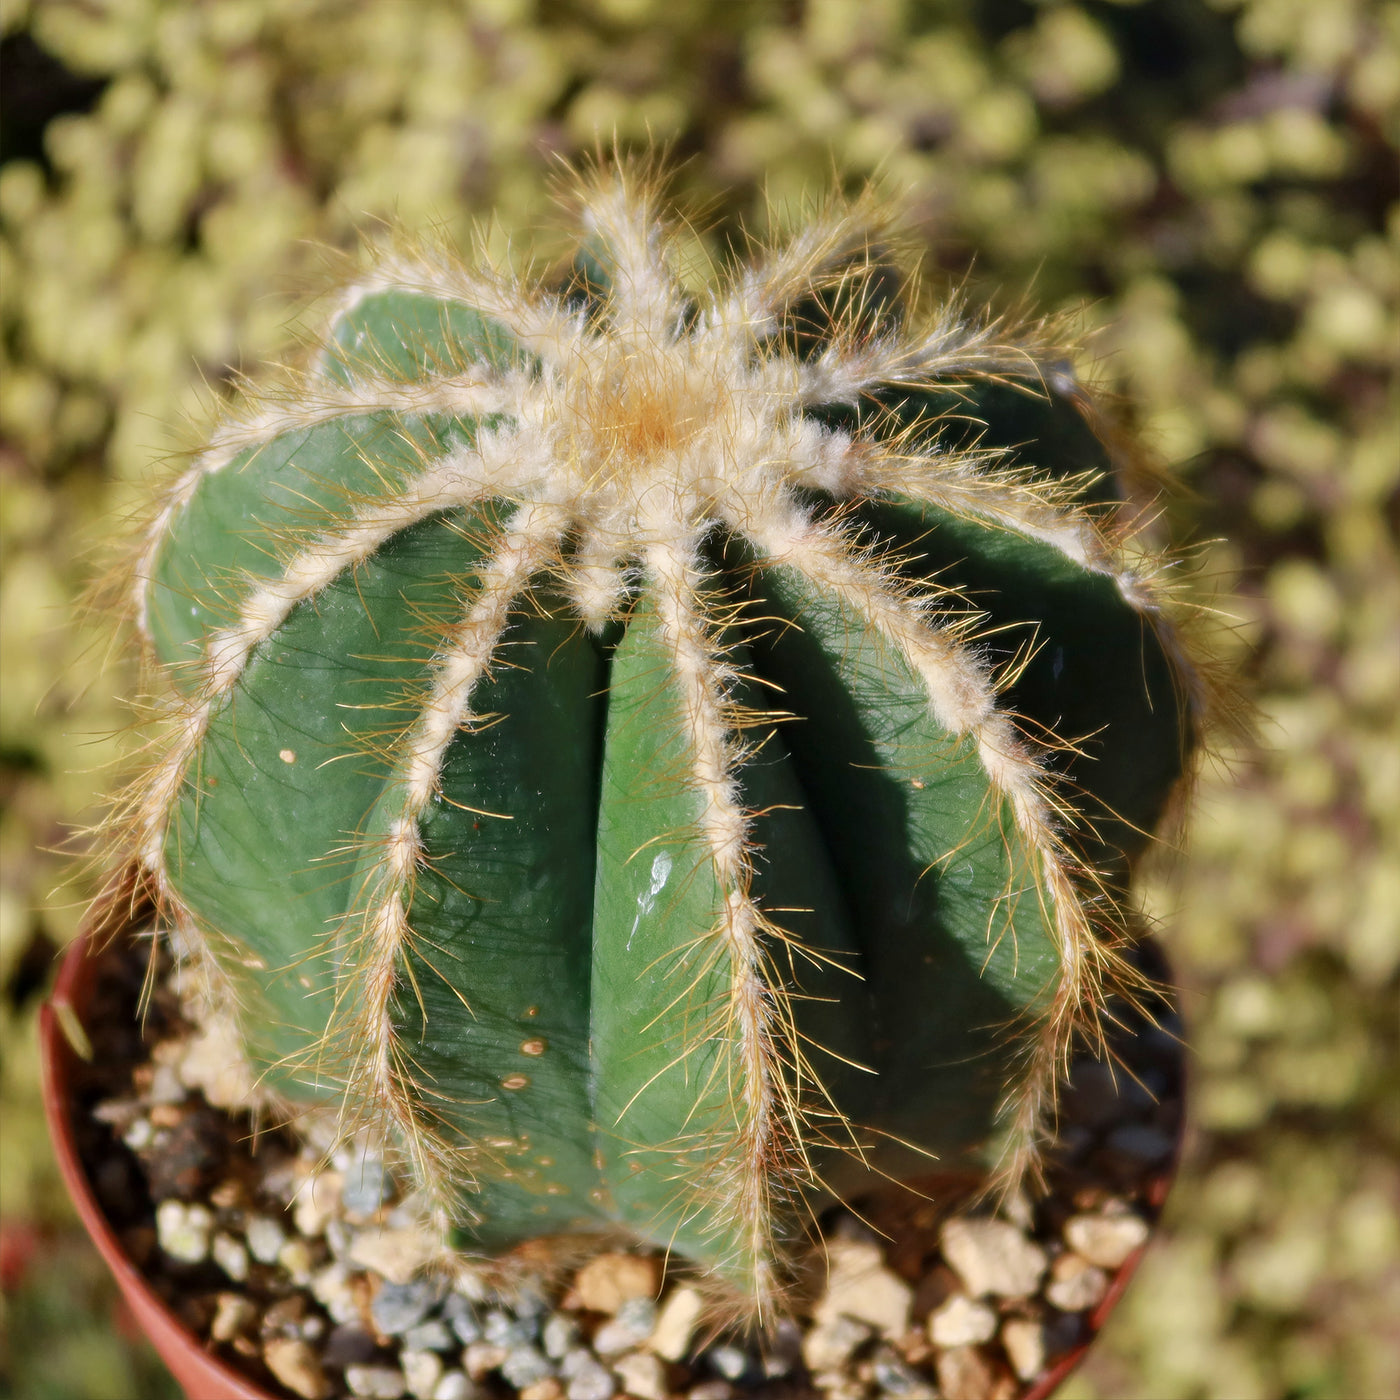 Ball Cactus 'Parodia magnifica'